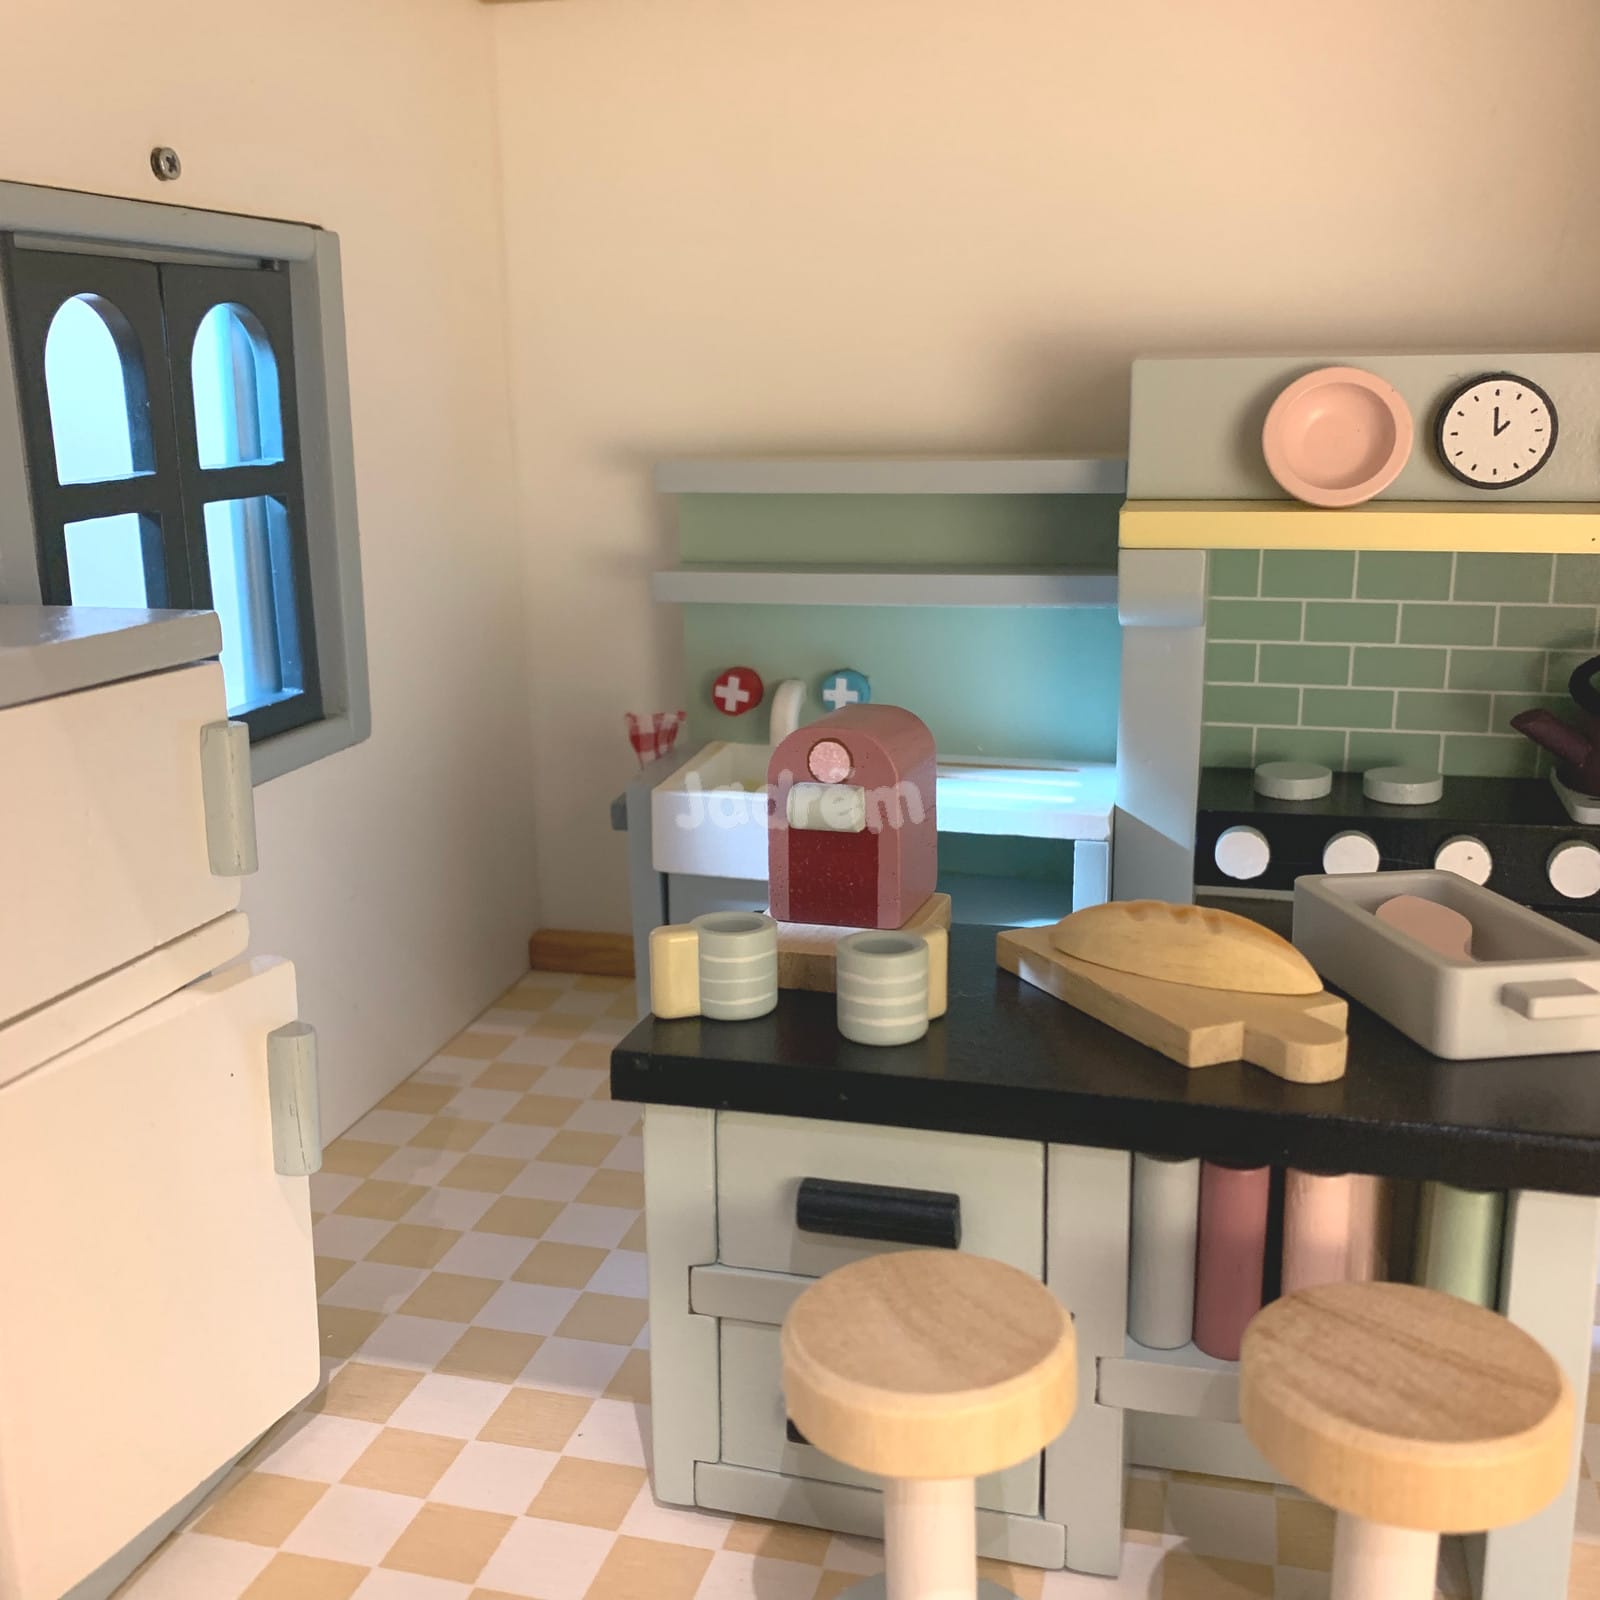 dolls house furniture kitchen